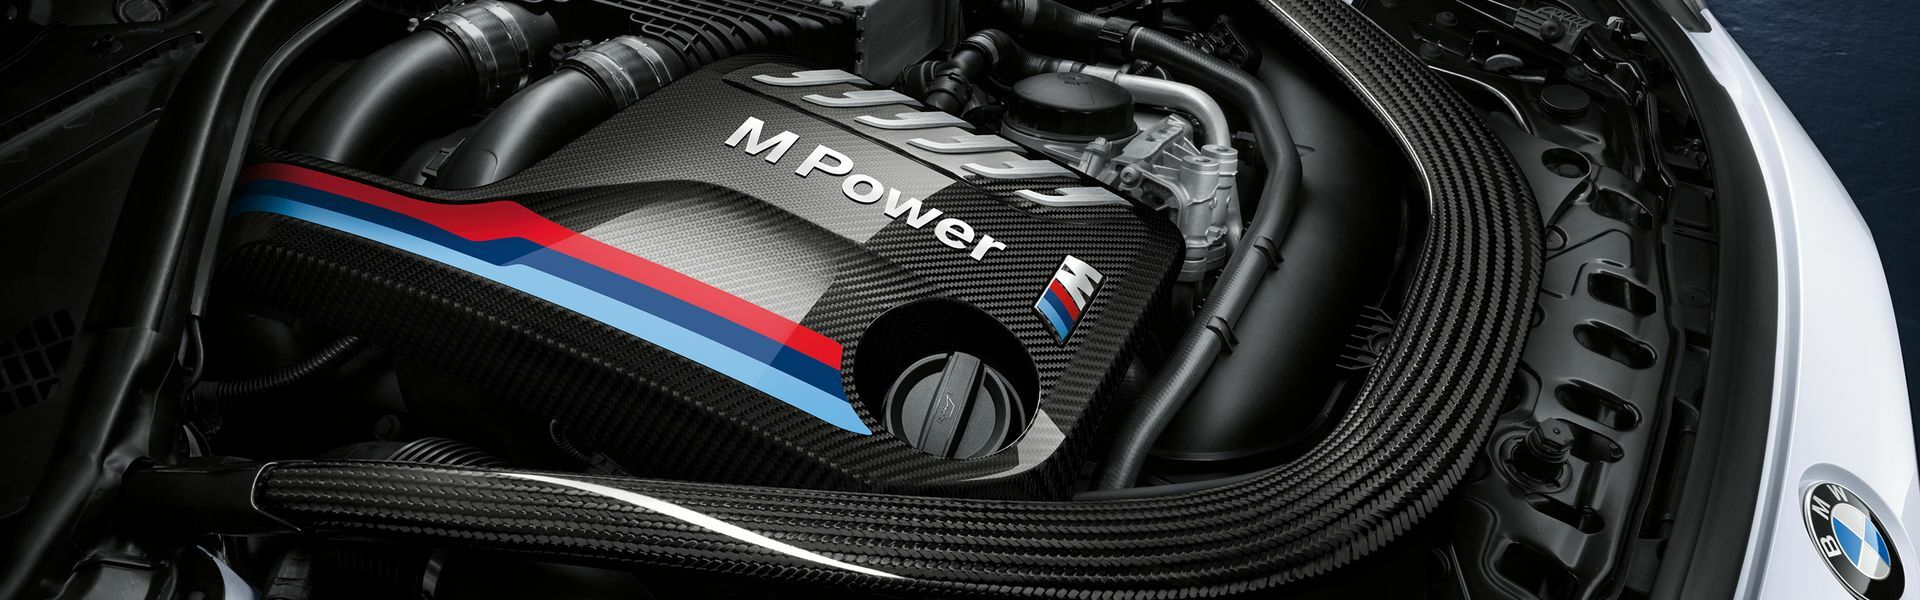 Zvýšení výkonu/ Softwarové úpravy/ Drobné performance díly pro automobil BMW M3 G80